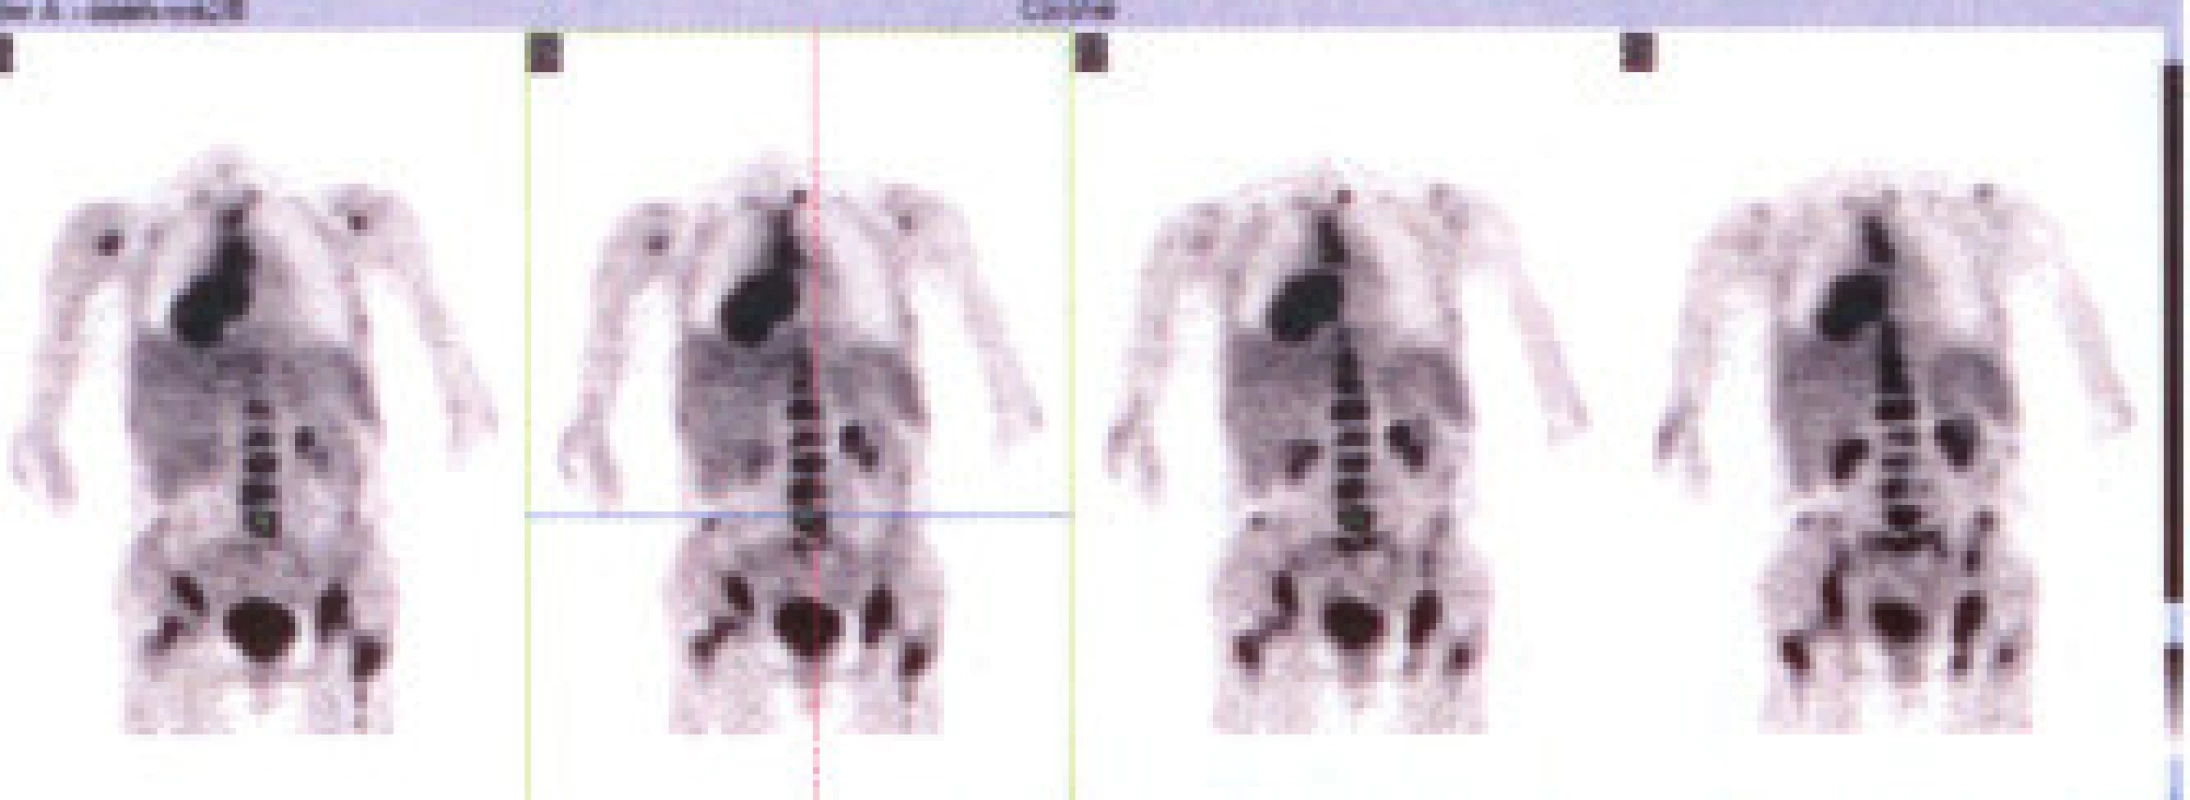 Celotělový PET s nálezem generalizovaného tumoru plic a mediastina s metastázami do skeletu.